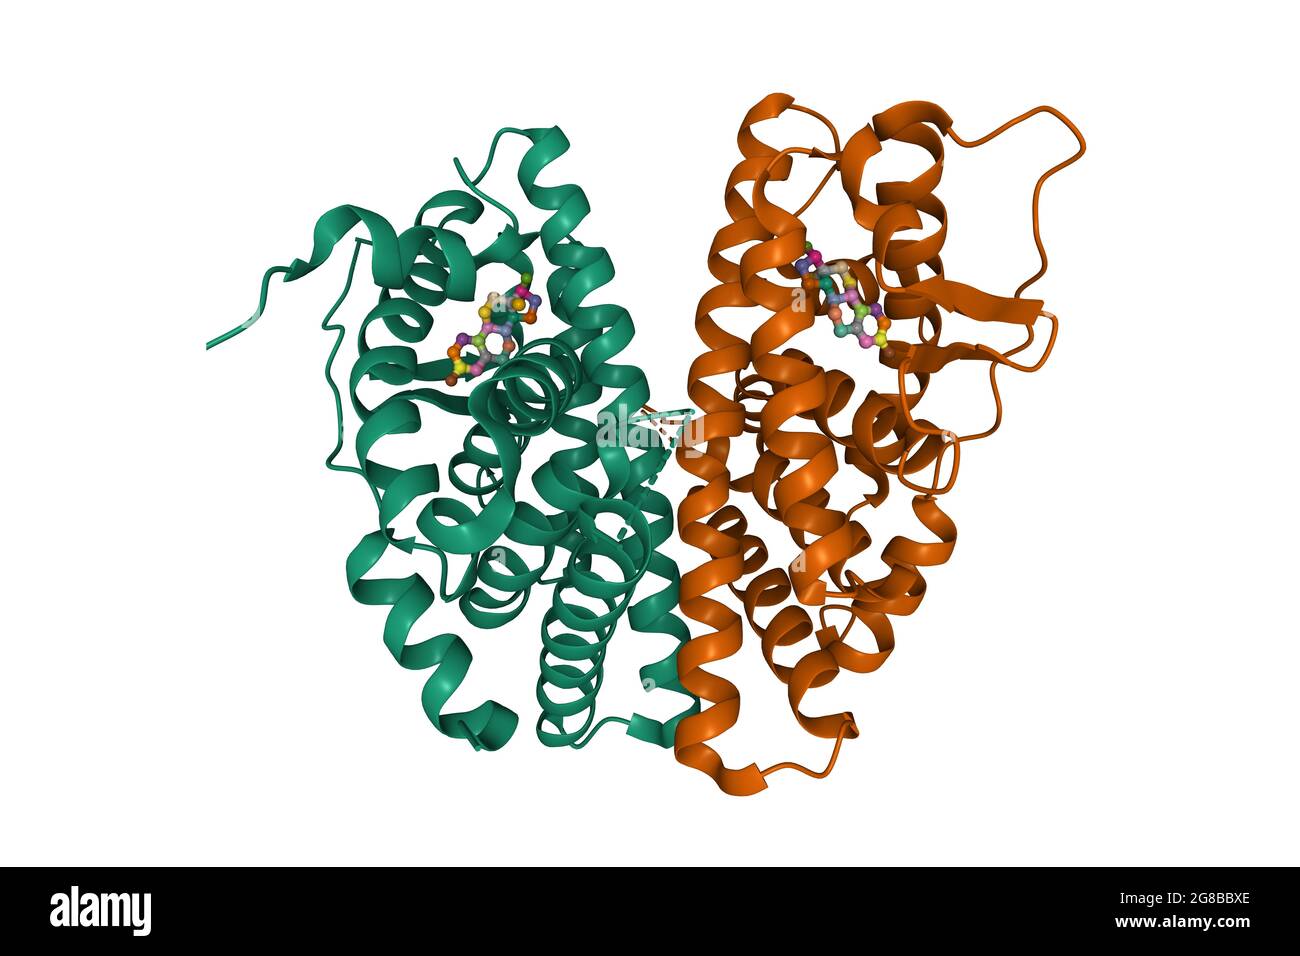 Dimère bêta du récepteur d'oestrogène en complexe avec l'estradiol, modèle de dessin animé 3D, schéma de couleur d'identification de chaîne, basé sur PDB 5toa, fond blanc Banque D'Images